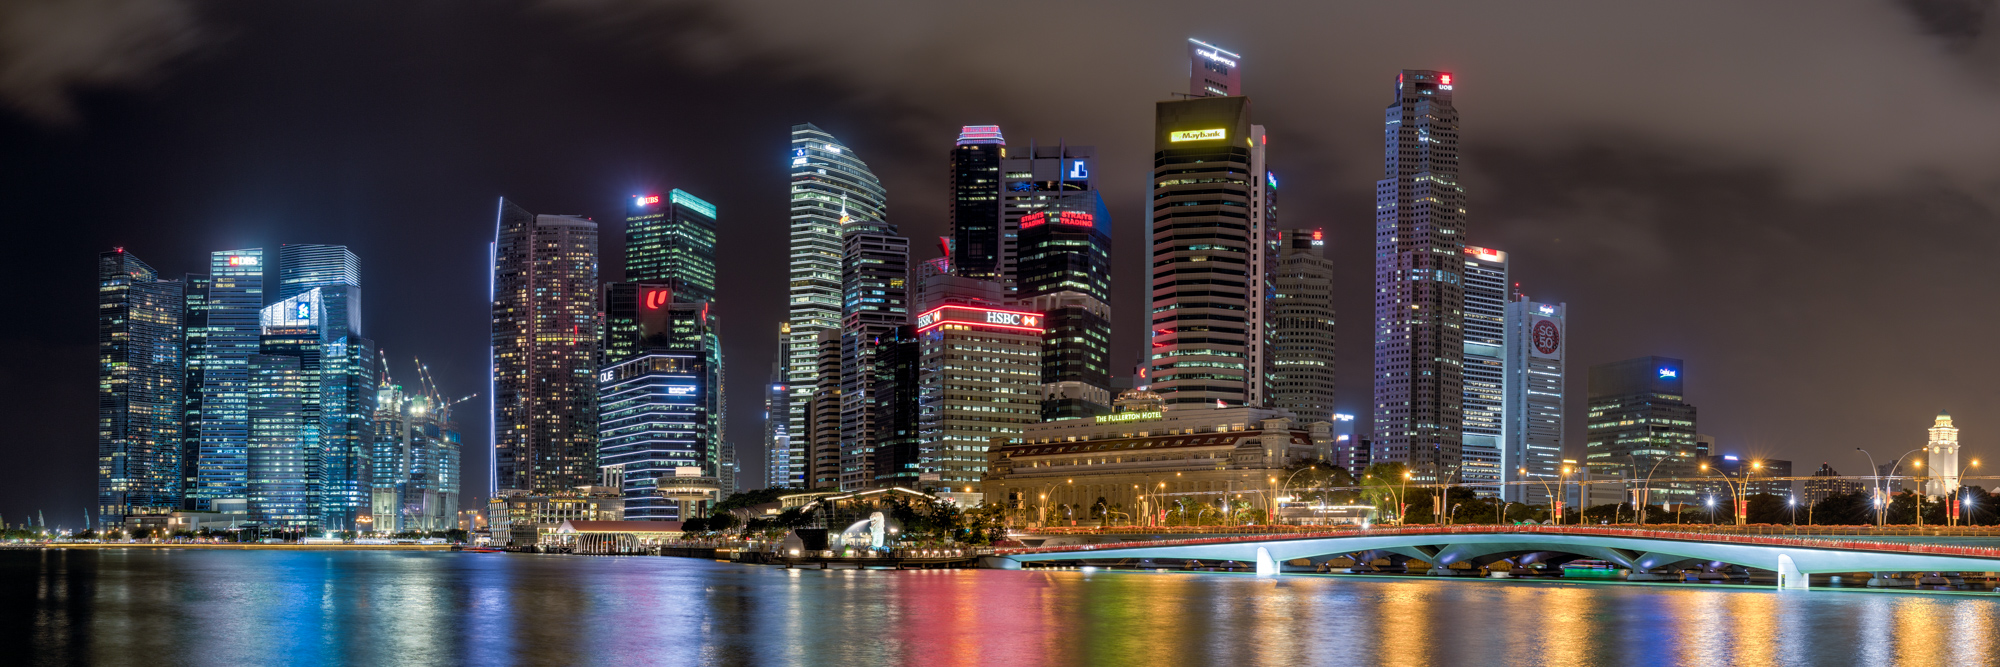 Singapore-Skyline-4.jpg